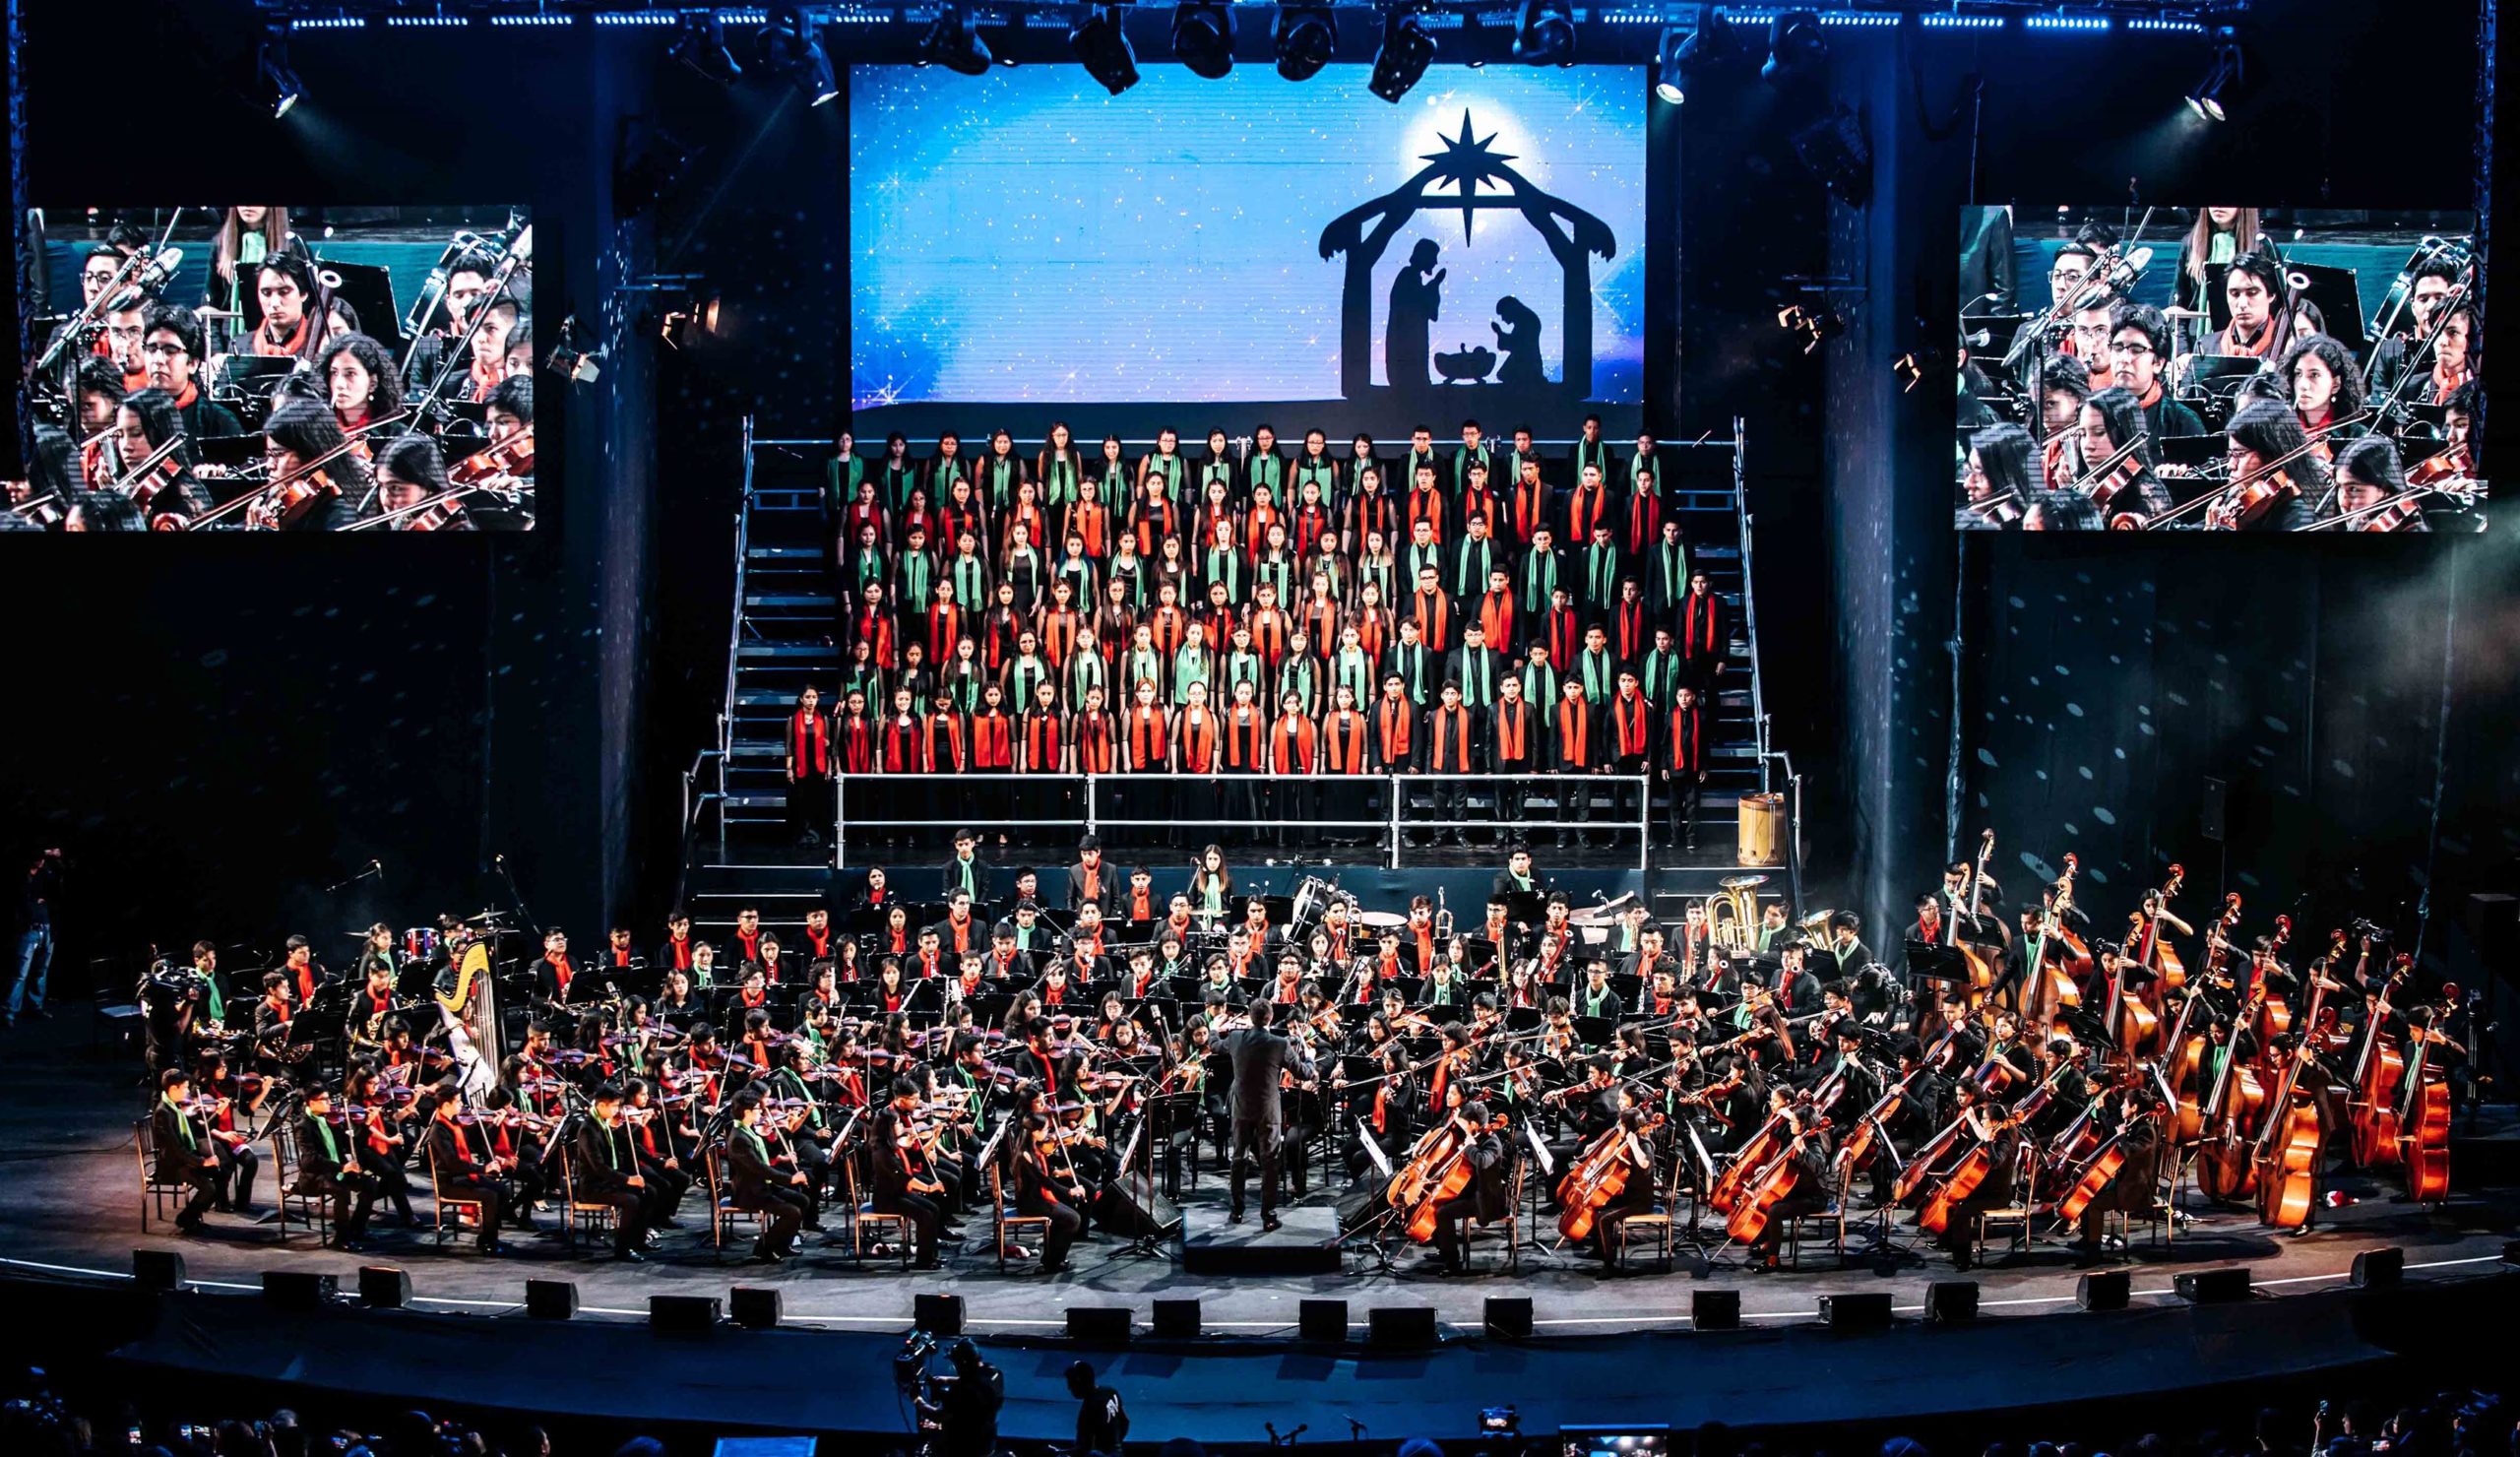 Sinfonía por el Perú presentará su clásico concierto de navidad en el Parque de la Exposición